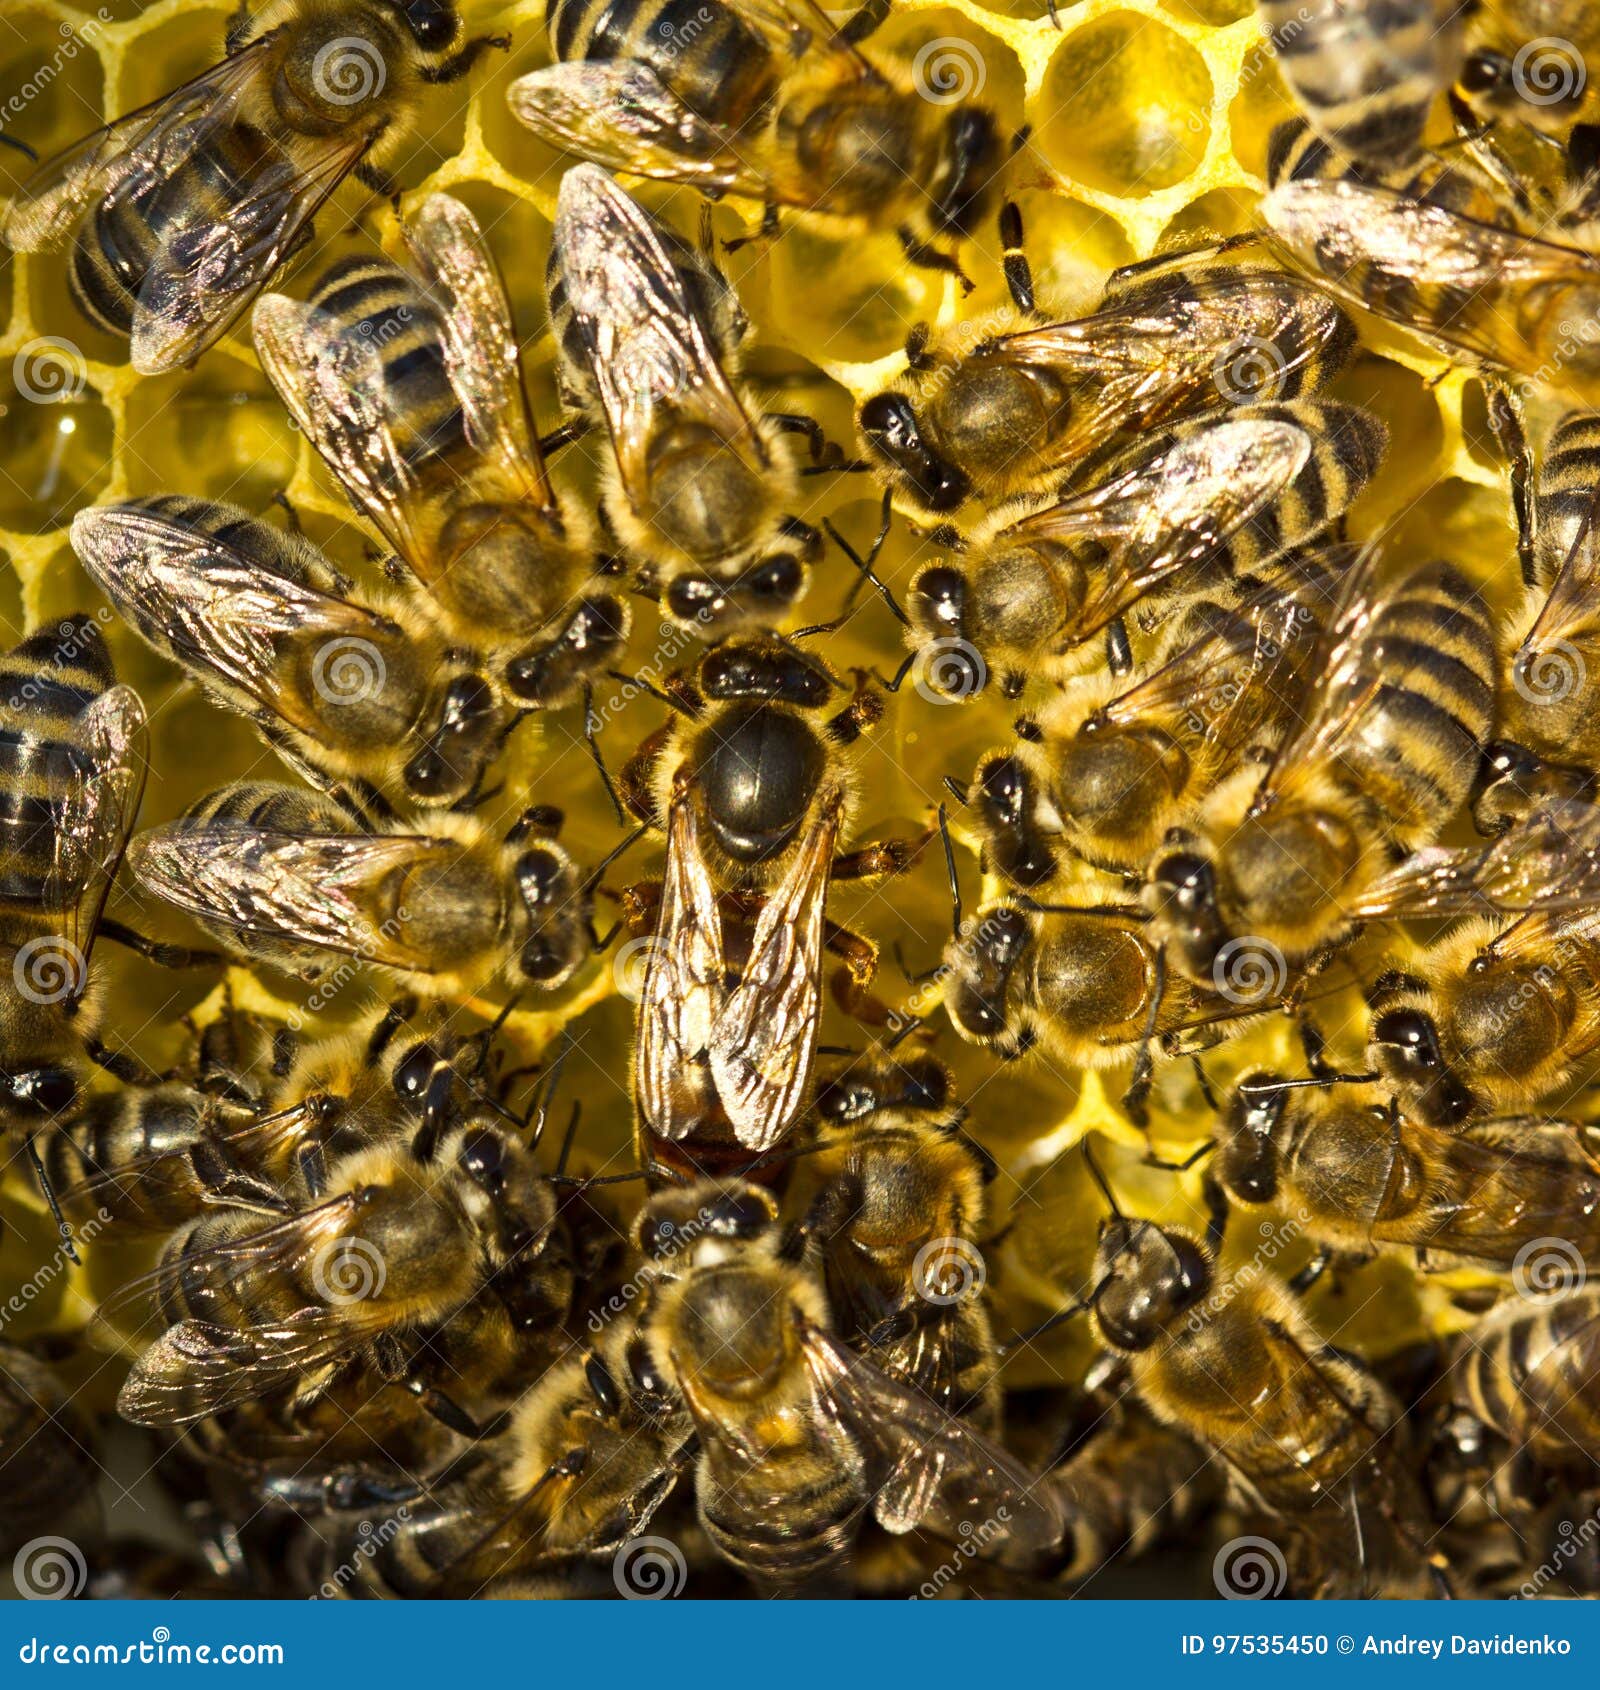 蜜蜂的生殖系统-知花蜂蜜网-,养蜂知识-蜜蜂|生殖系统|贮精囊|射精管|阴茎|睾丸|阴道|知花蜂蜜-中国蜂蜜行业门户网站-www ...